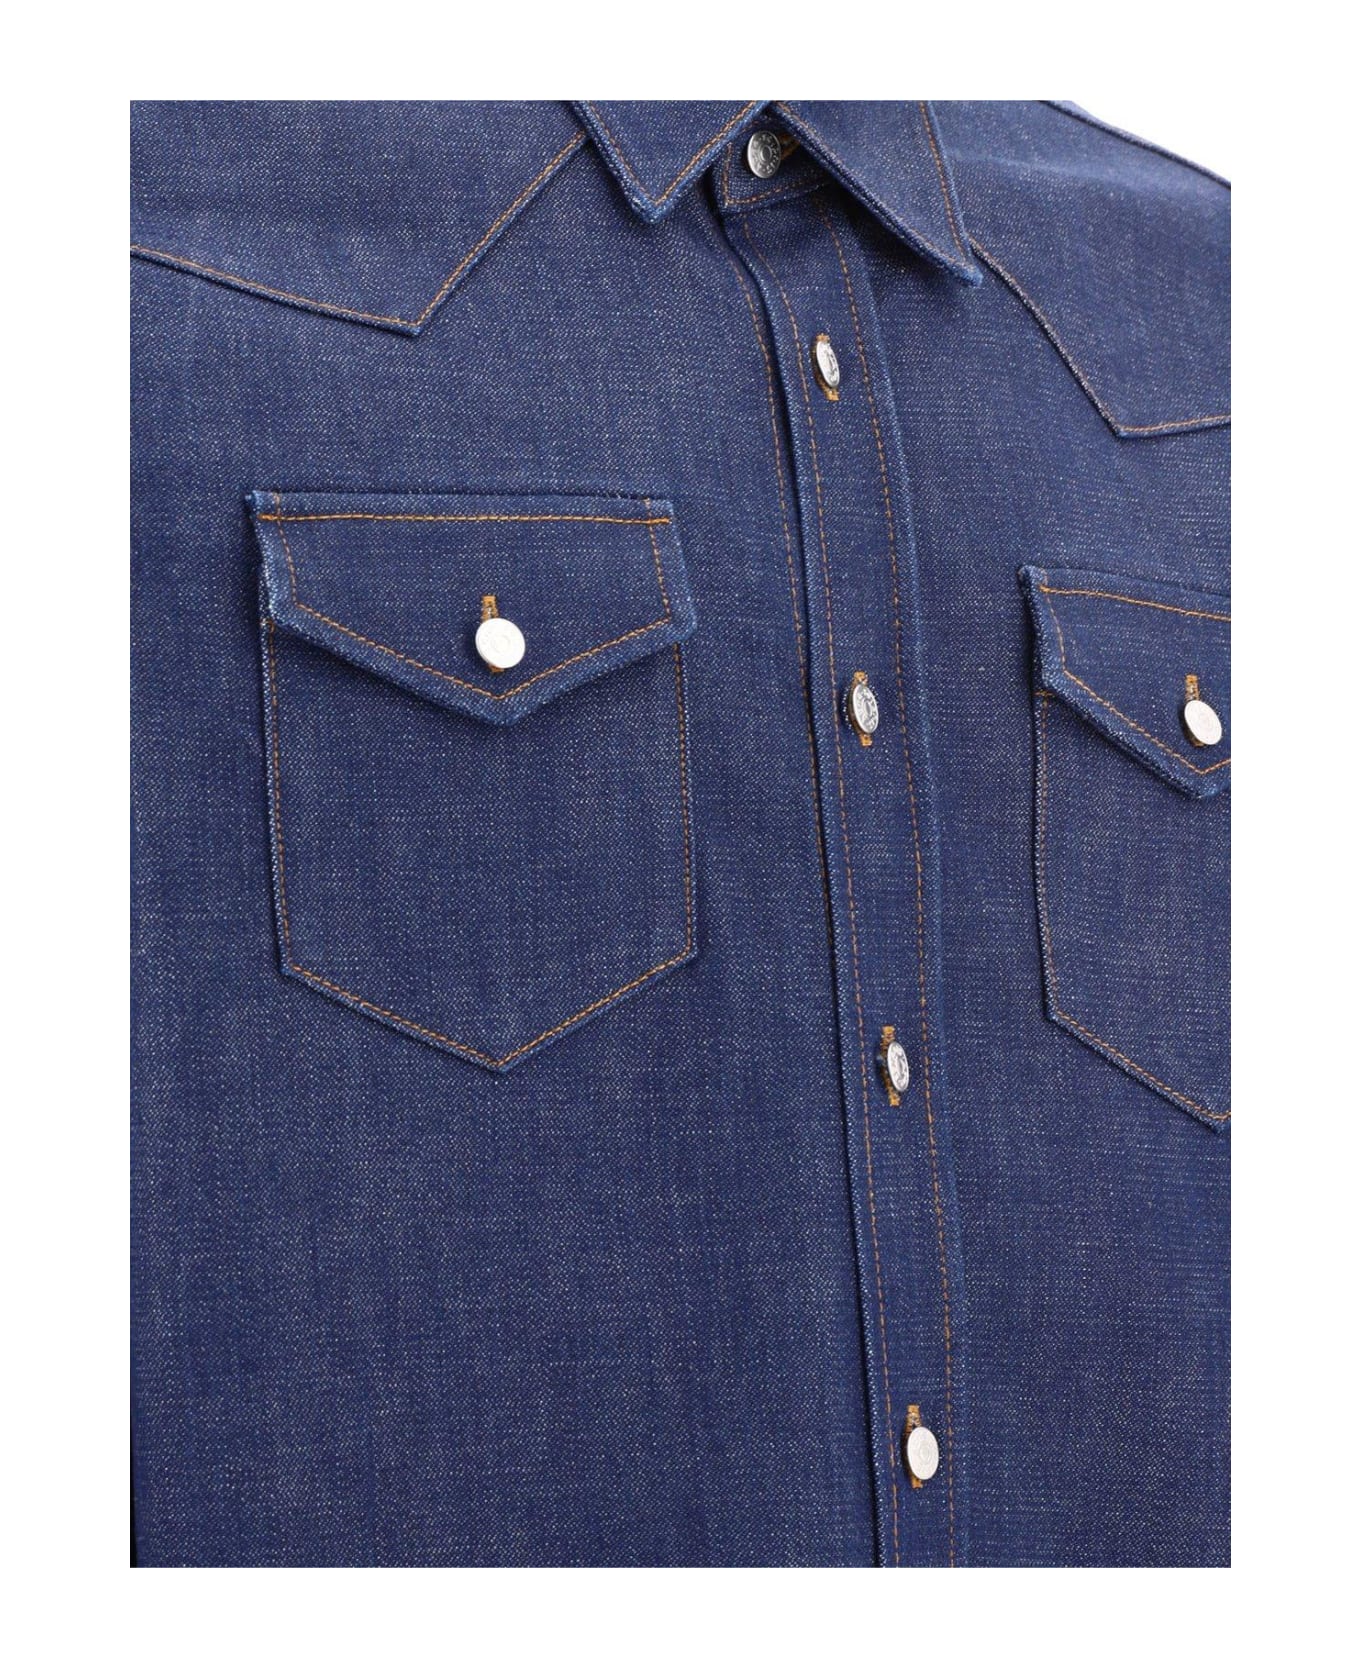 Acne Studios Collared Button-up Shirt - Indigo Blue